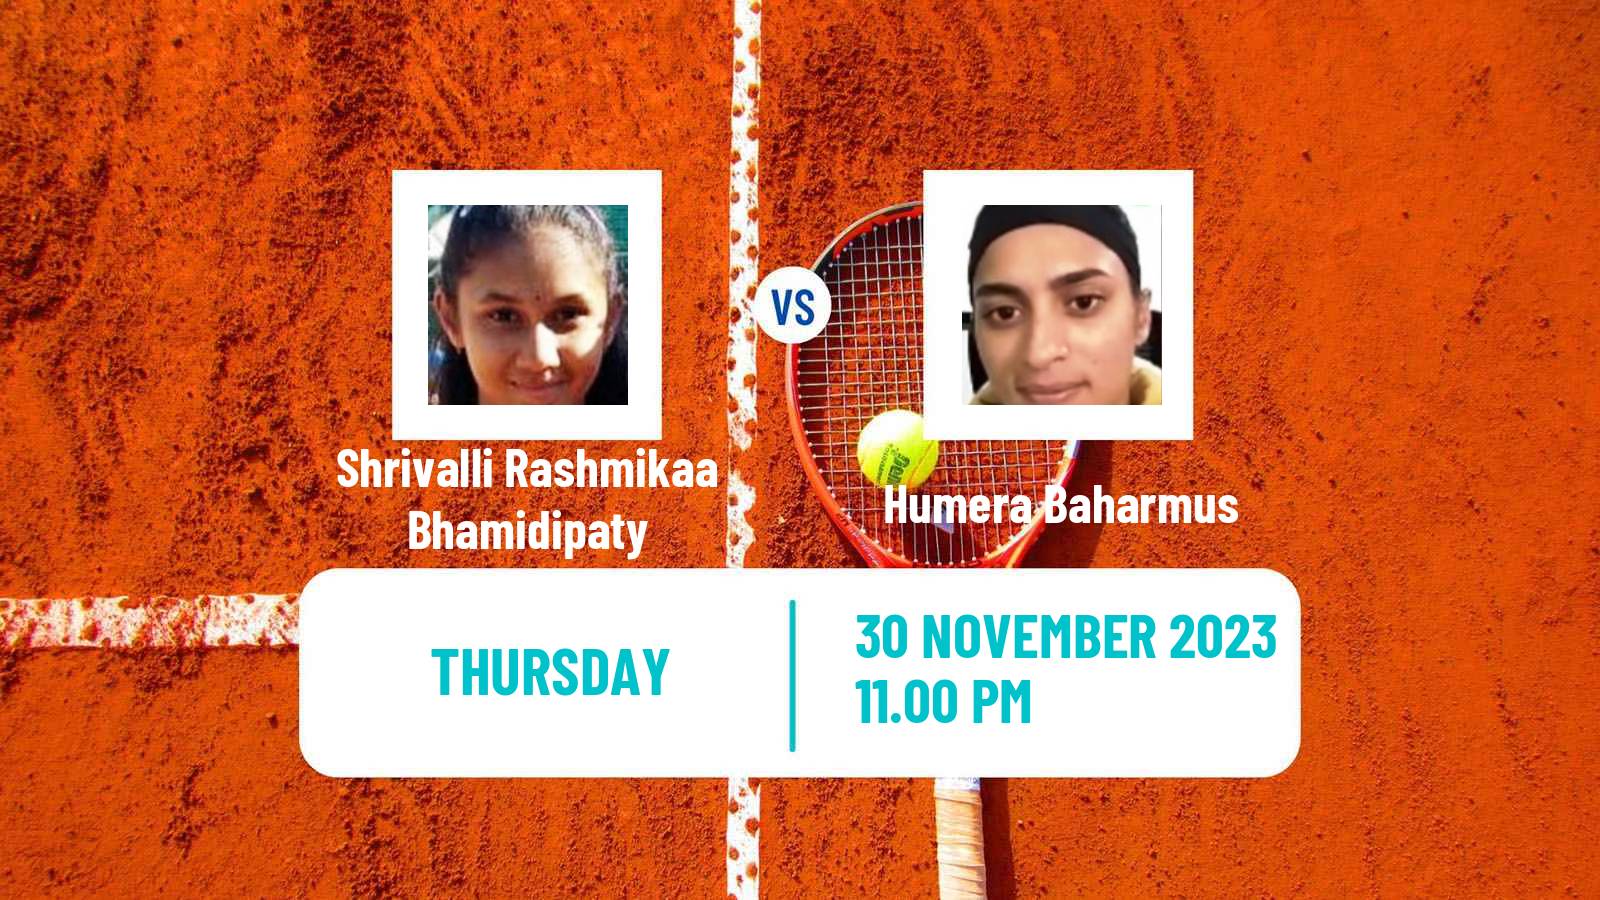 Tennis ITF W15 Ahmedabad Women Shrivalli Rashmikaa Bhamidipaty - Humera Baharmus